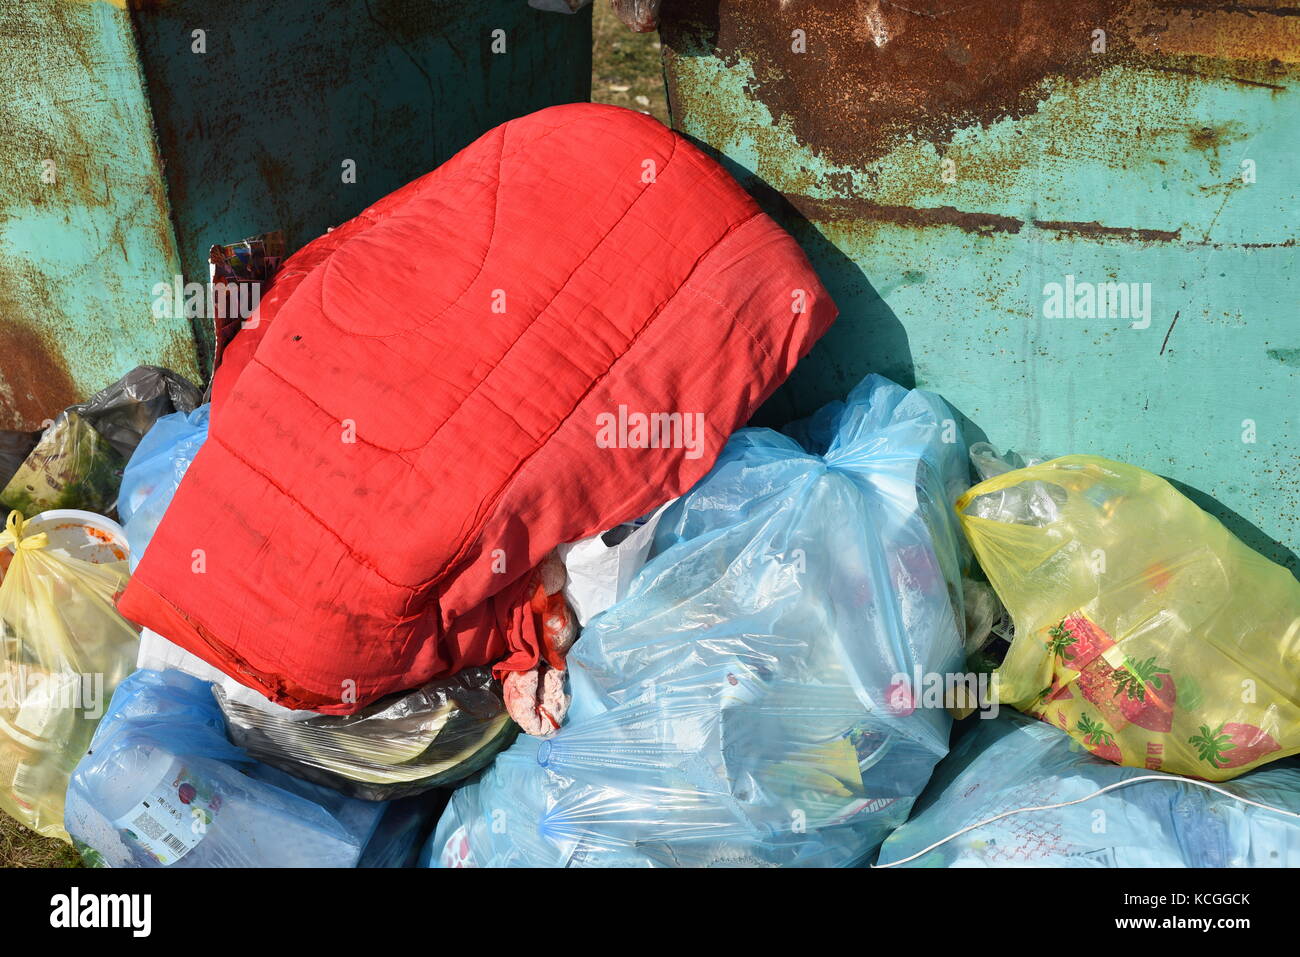 Les sacs de déchets jetés portant sur le côté d'un bac de recyclage de métal vert Banque D'Images